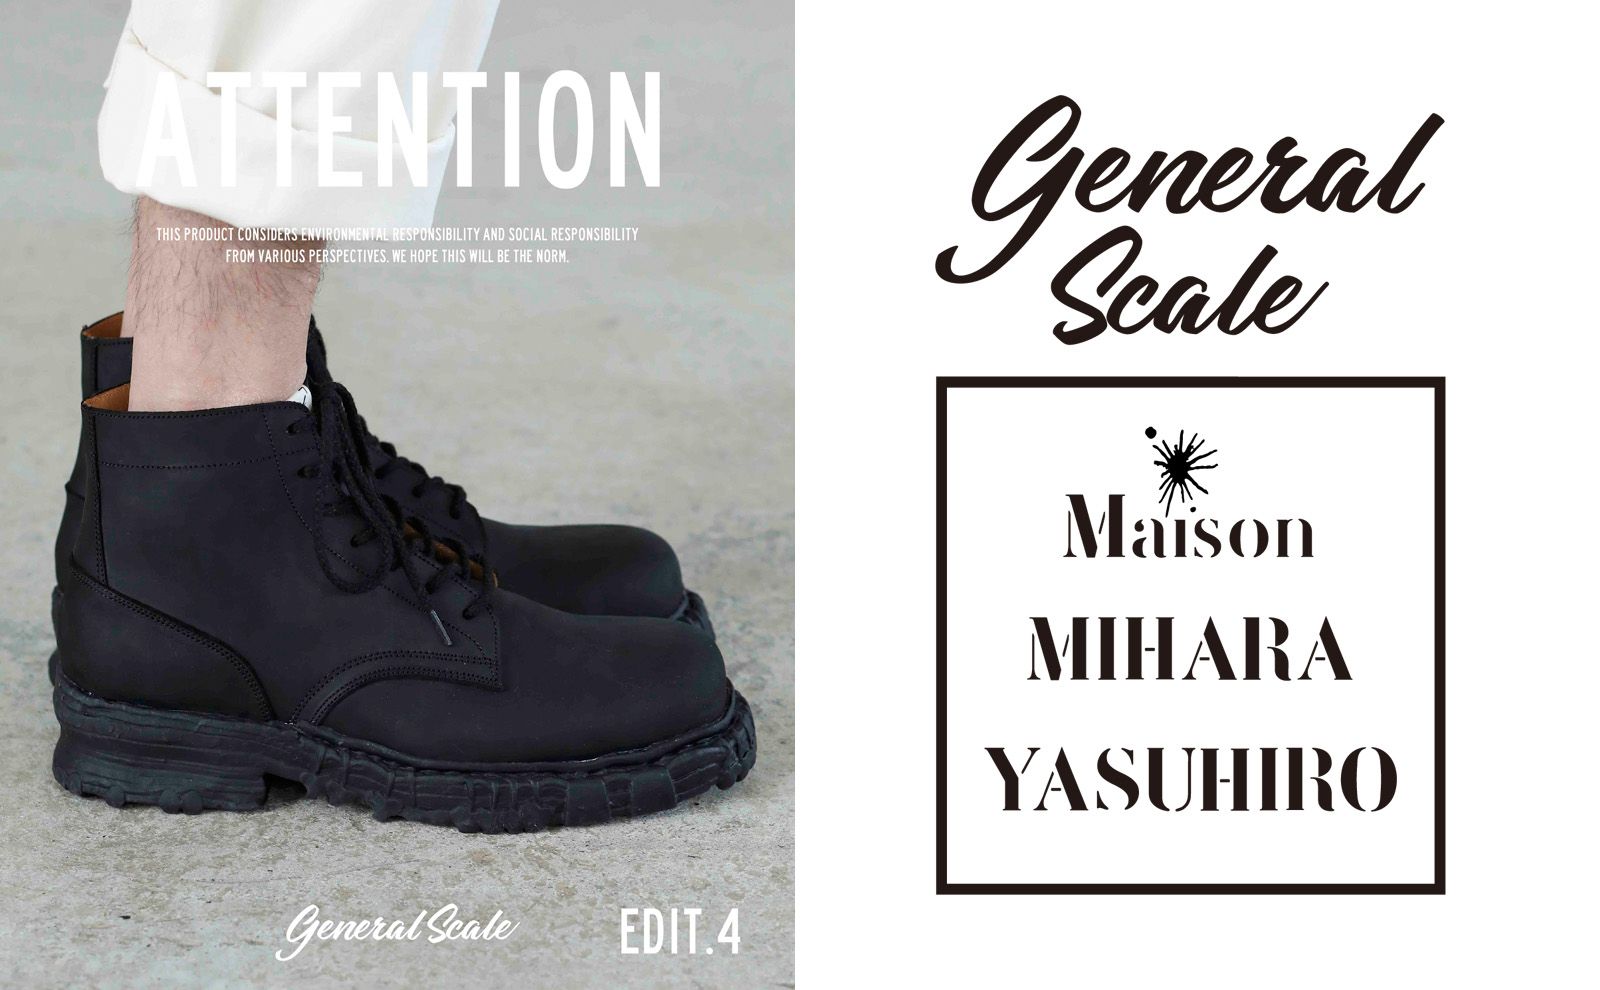 Maison MIHARA YASUHIRO - メゾン ミハラヤスヒロ 『General Scale